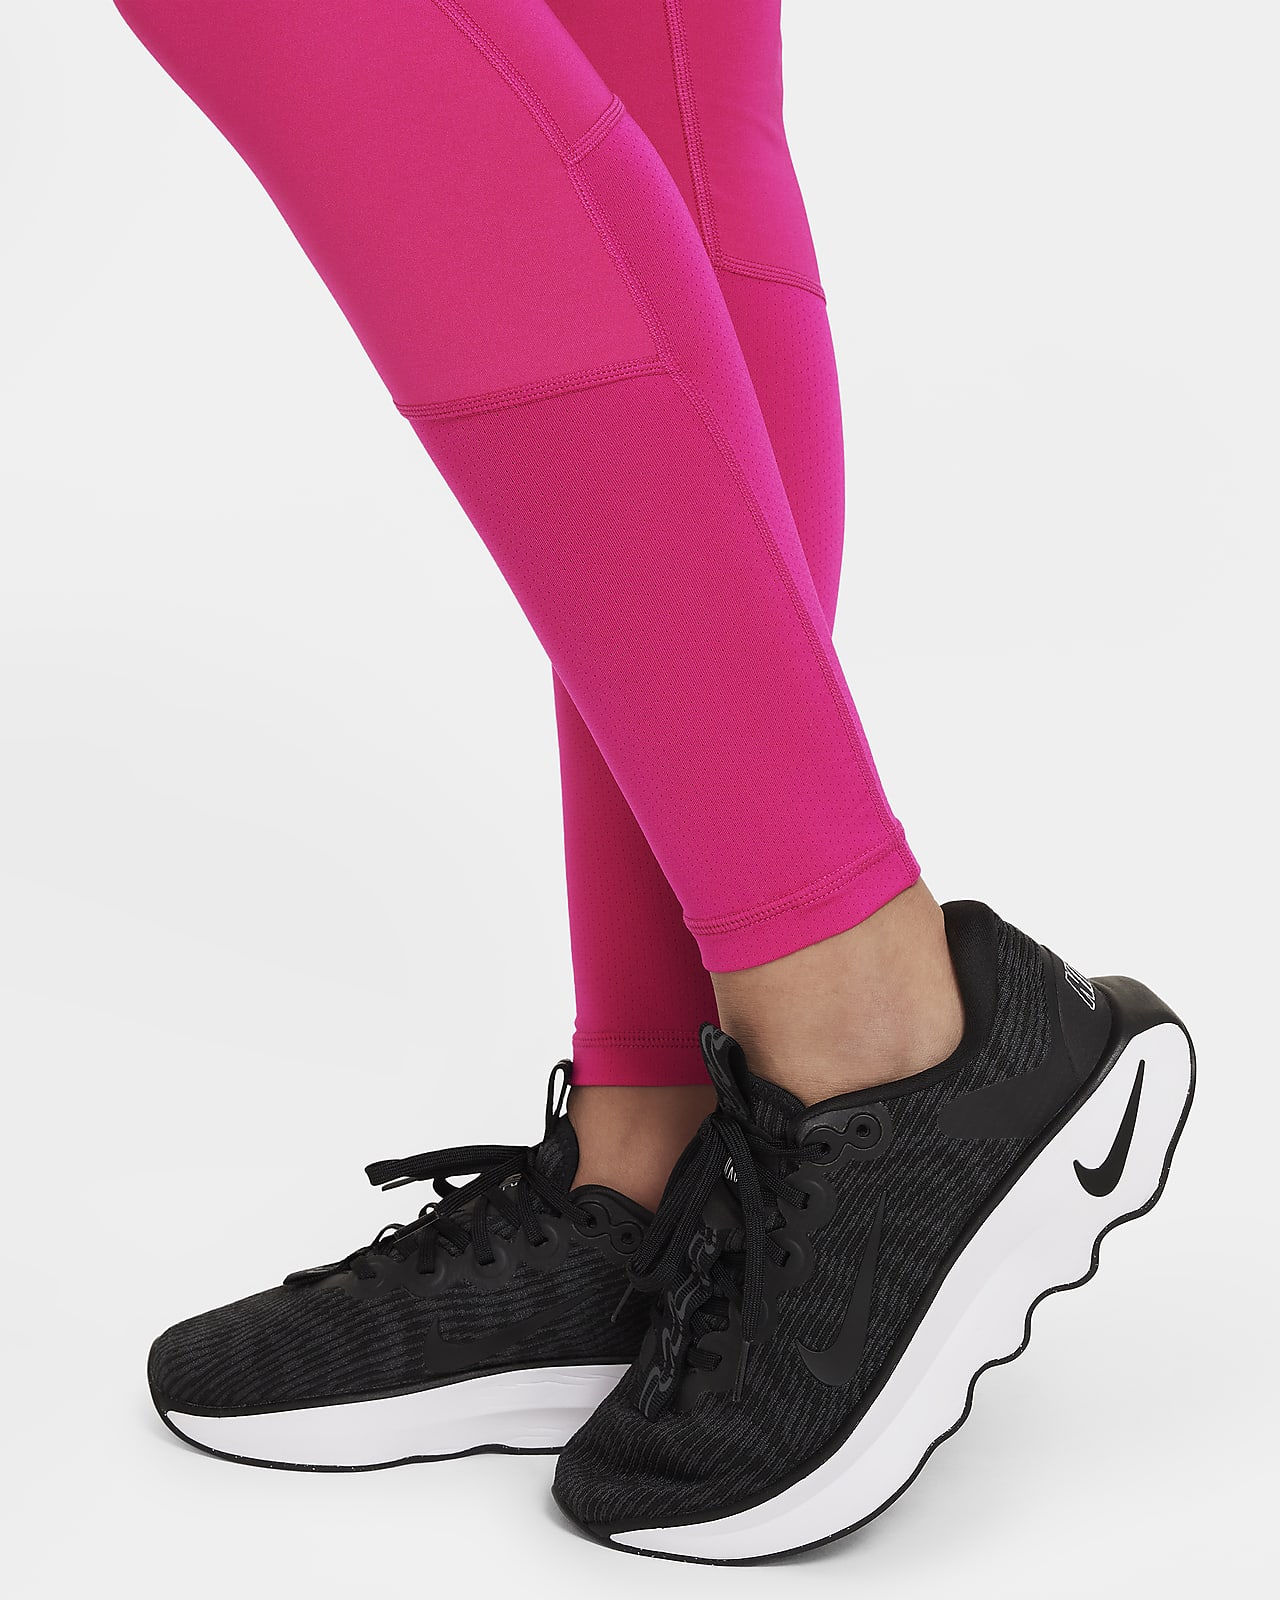 Nike Older Girls One Luxe Leggings - Black